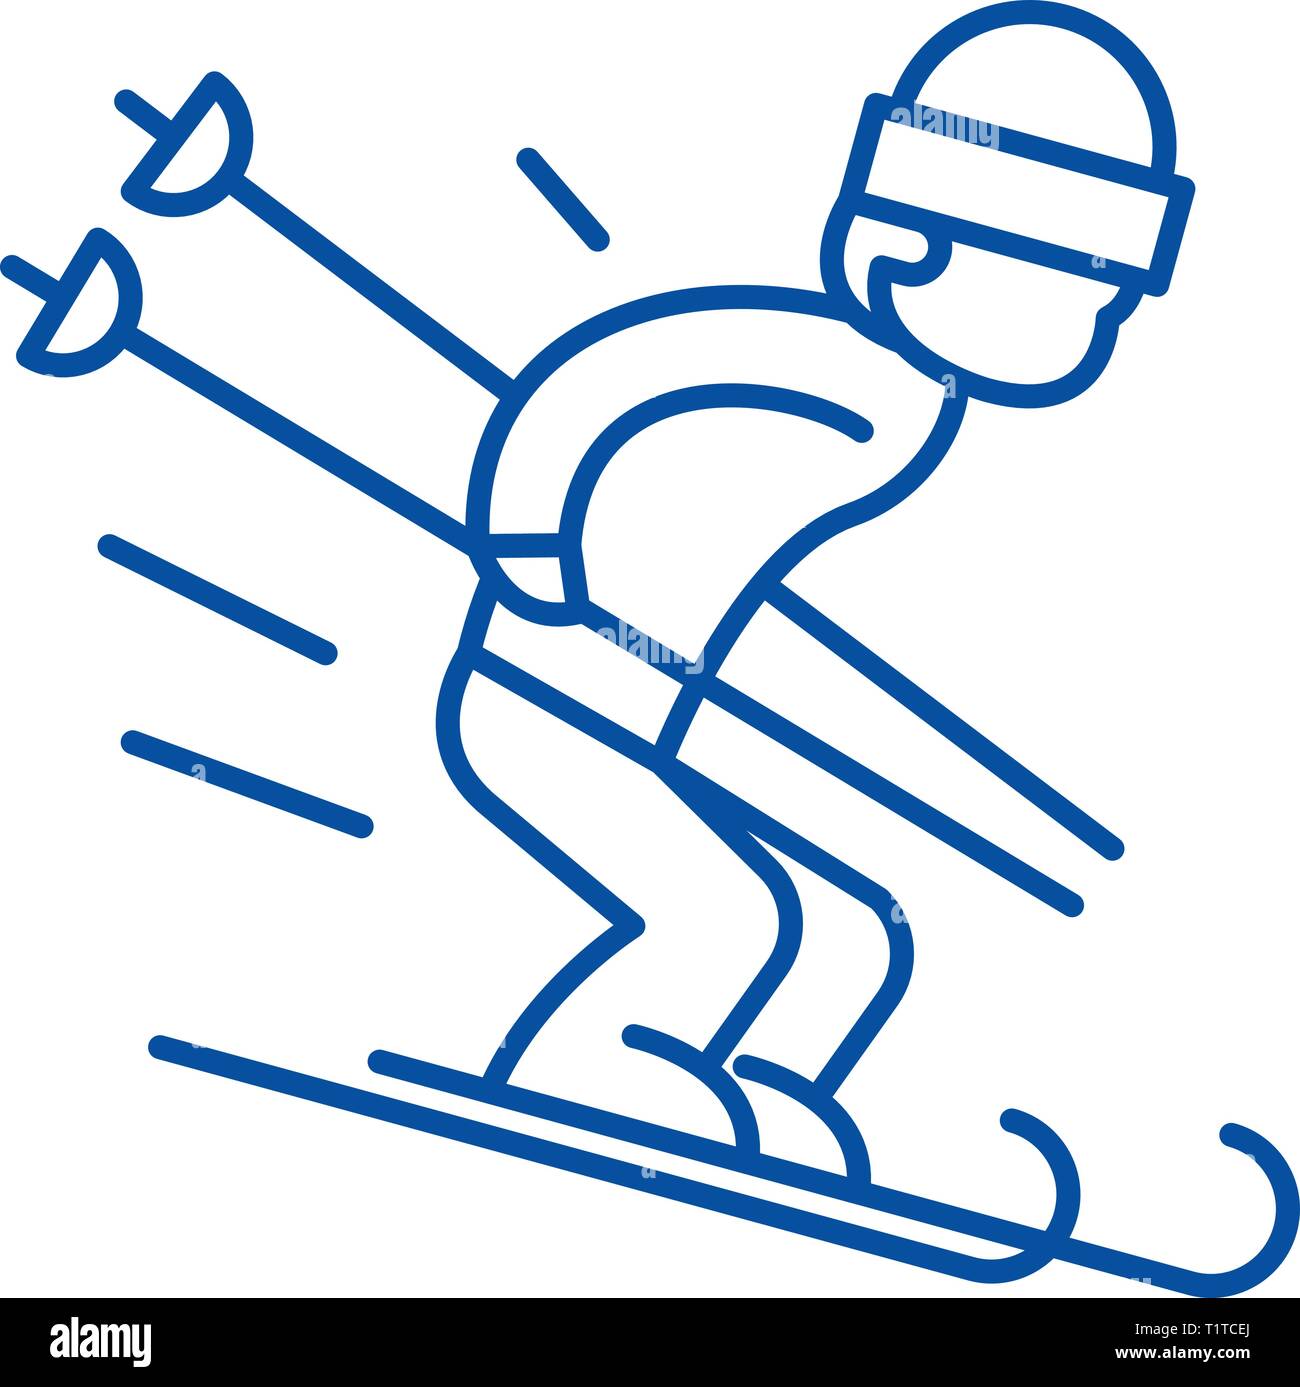 Schnee Skifahren Symbol Leitung Konzept. Schnee Skifahren flachbild Vektor Symbol, Zeichen, umriss Abbildung. Stock Vektor